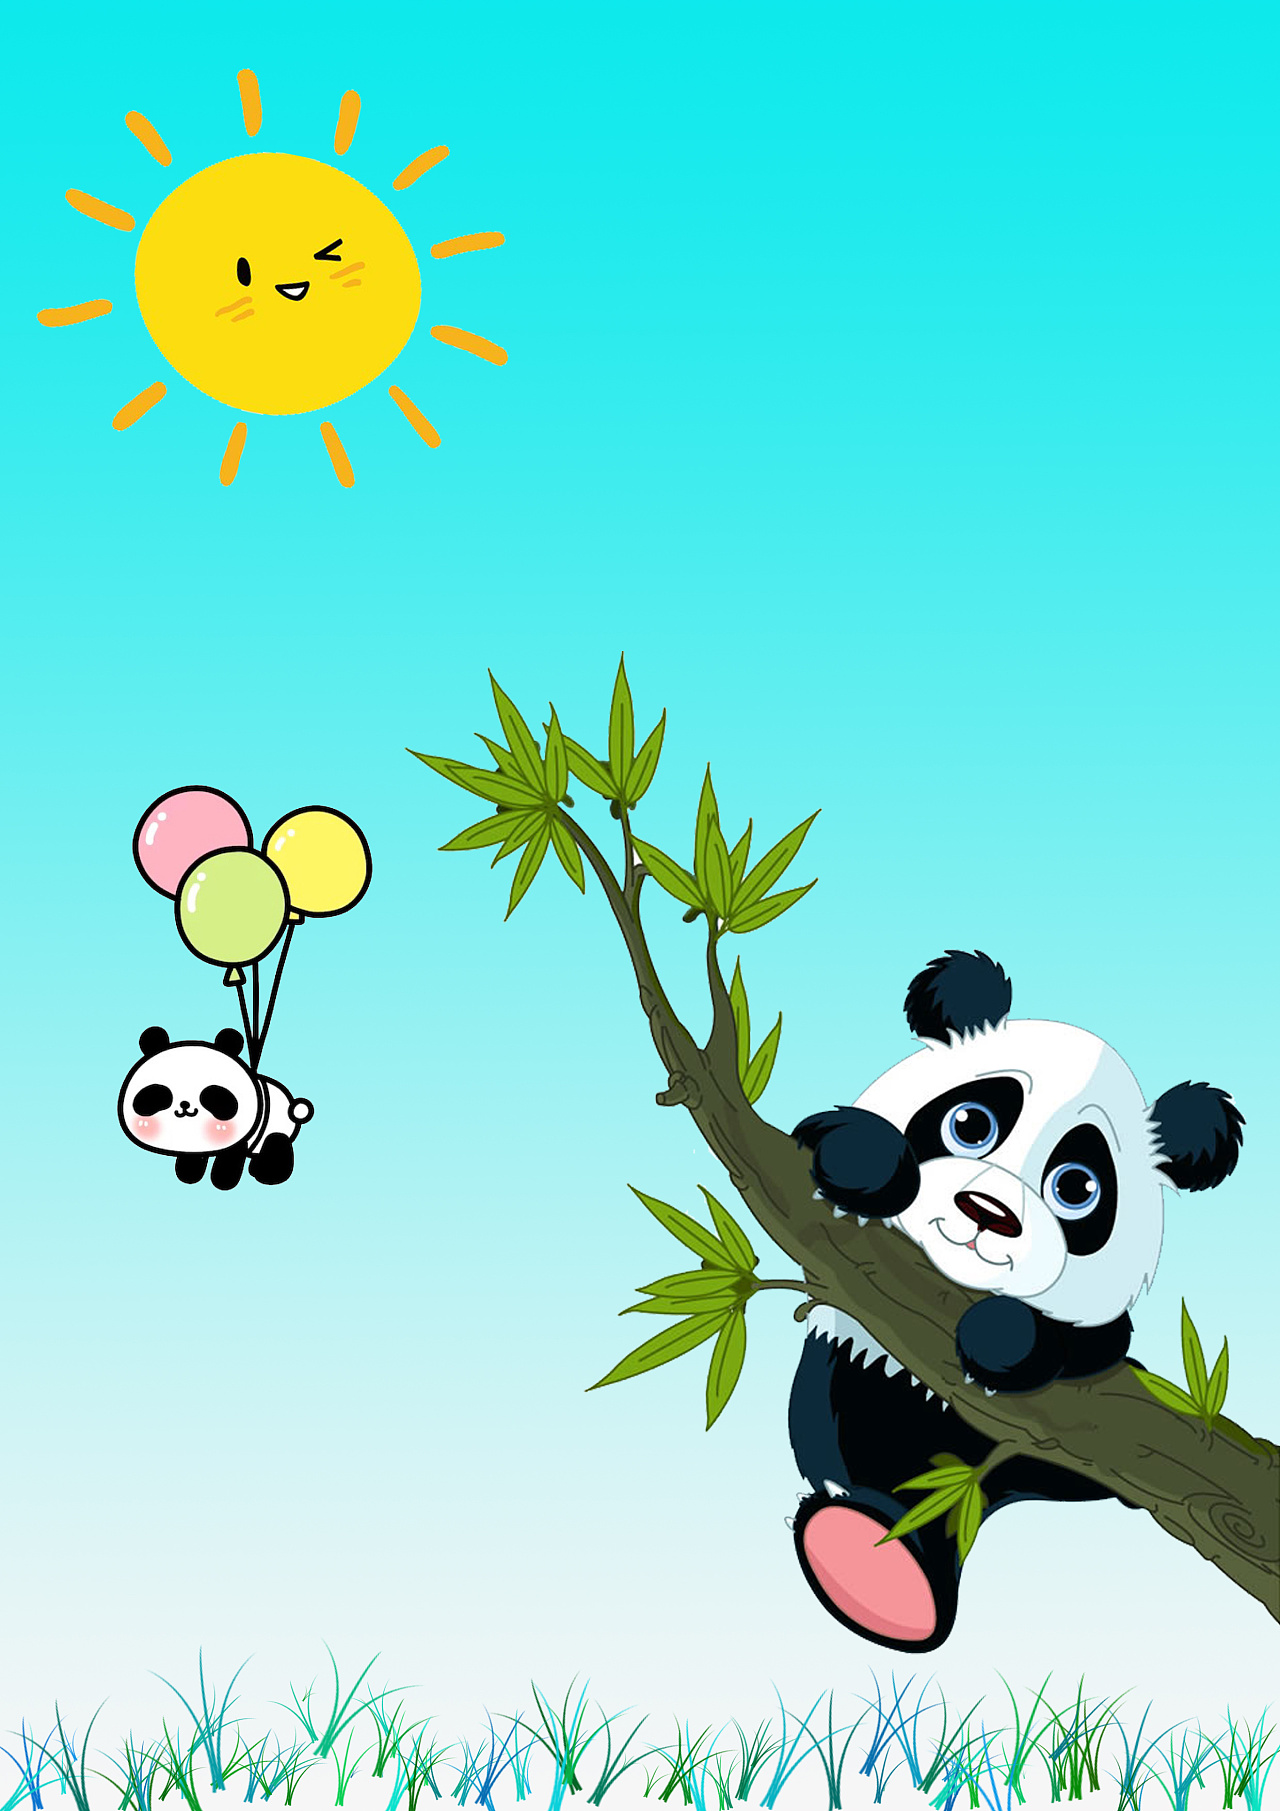 超级可爱的两个熊猫宝宝,加上蓝色的背景让人看上去非常的舒心